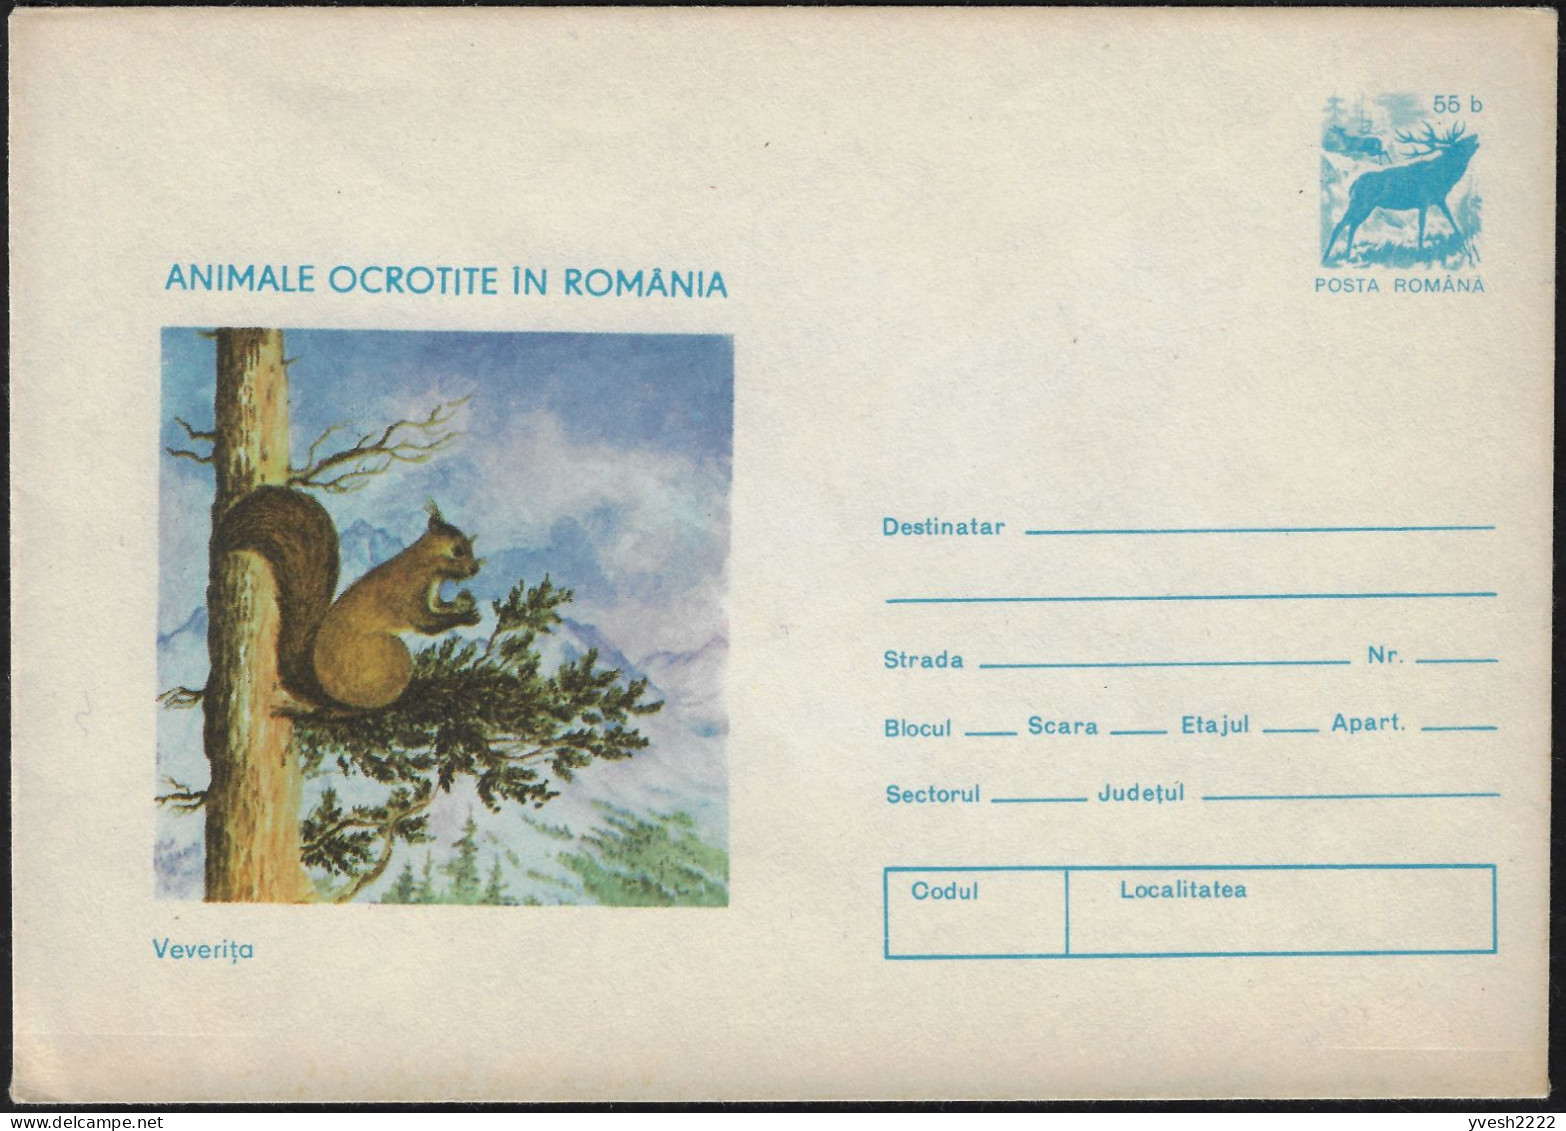 Roumanie 1977. Entier Postal, Animaux Protégés En Roumanie. Écureuil, Cerf - Rodents